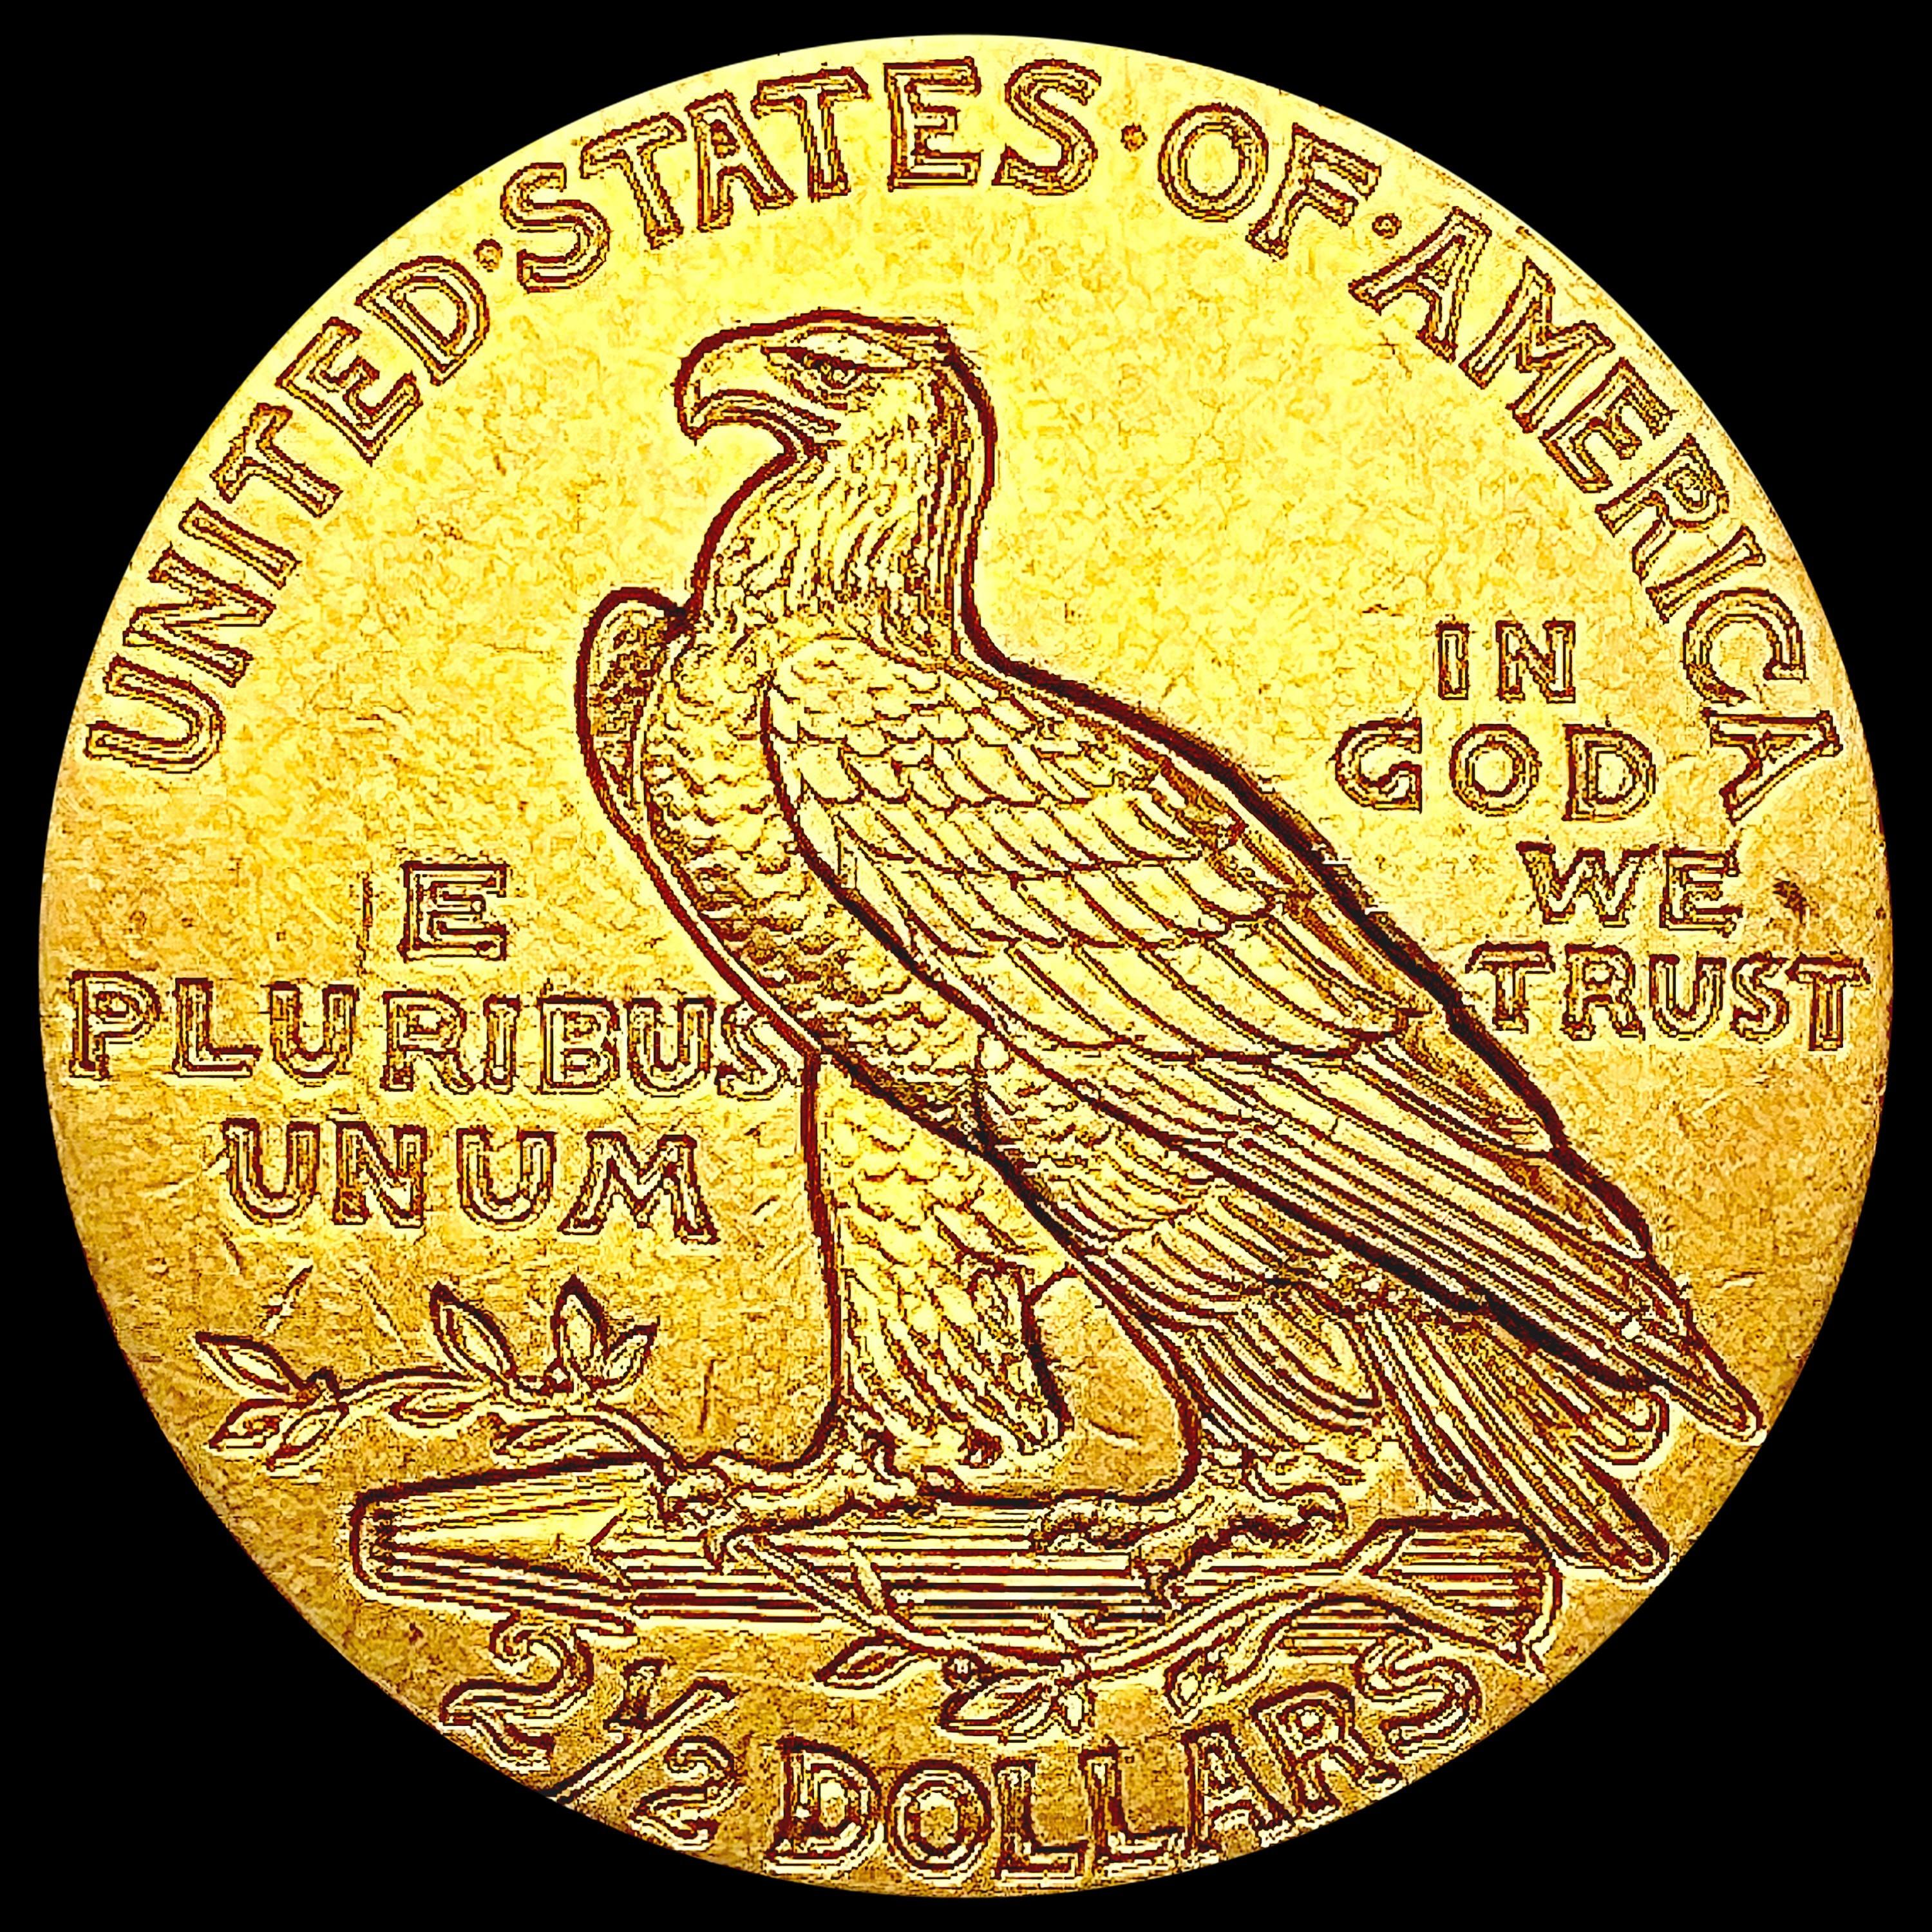 1915 $2.50 Gold Quarter Eagle CHOICE AU